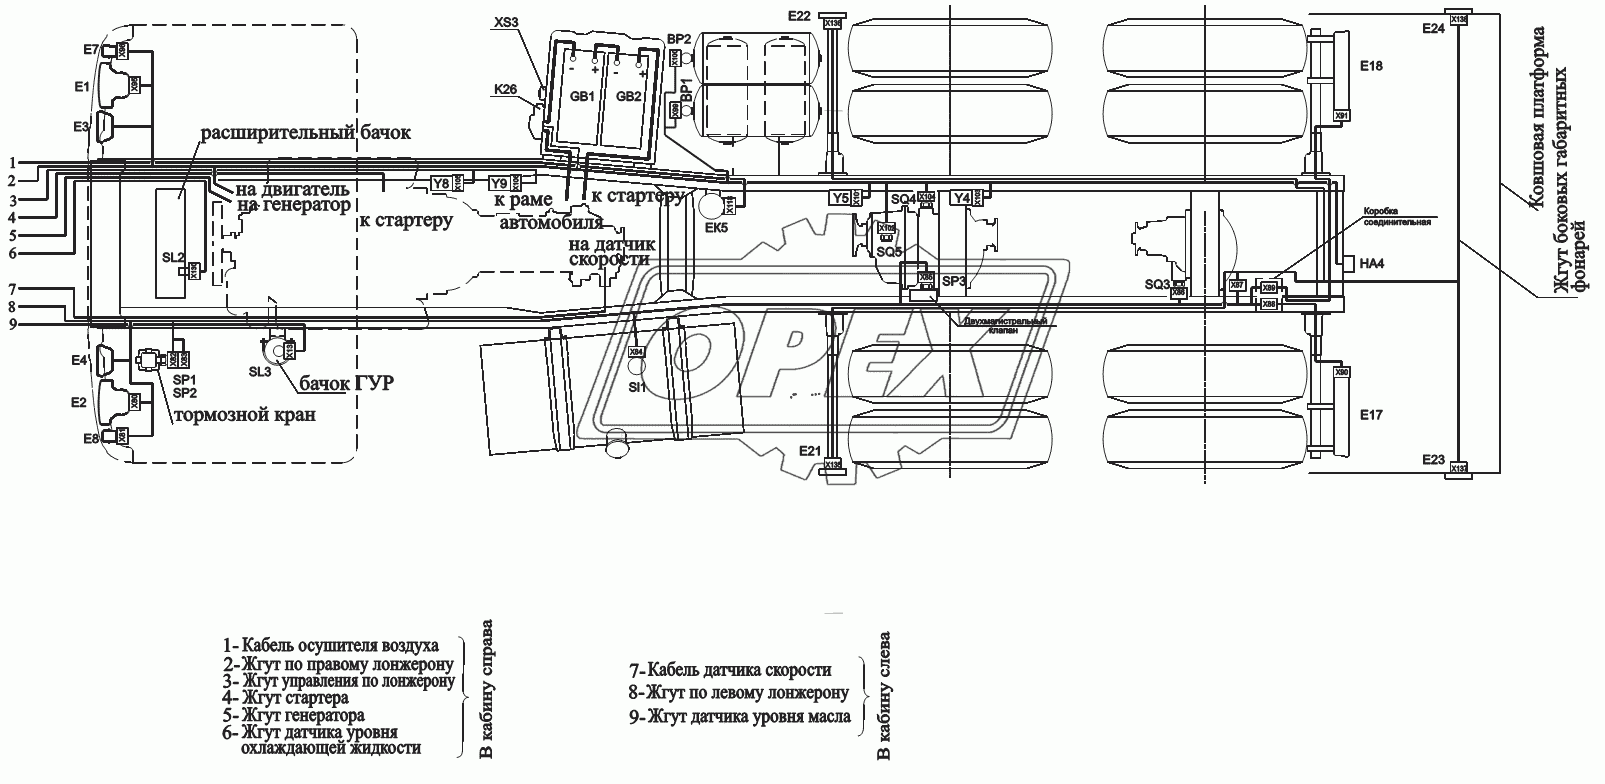 Расположение разъемов и элементов электрооборудования на шасси автомобилей-самосвалов с задней разгрузкой и ковшовой платформой